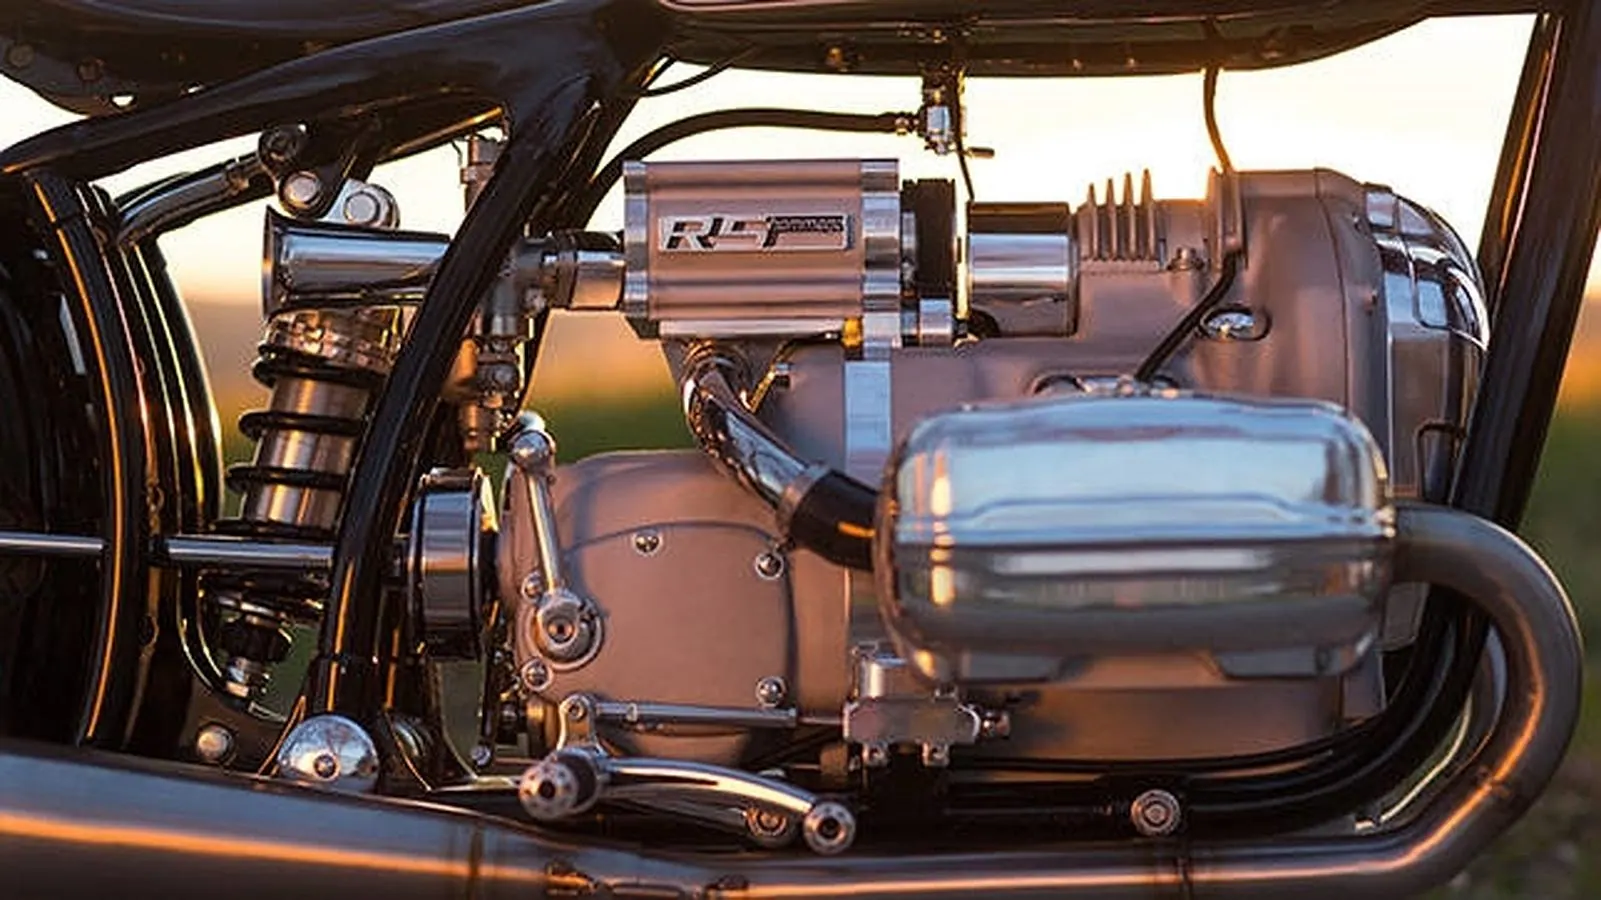 El motor de la BMW R 5 Hommage reparado por completo